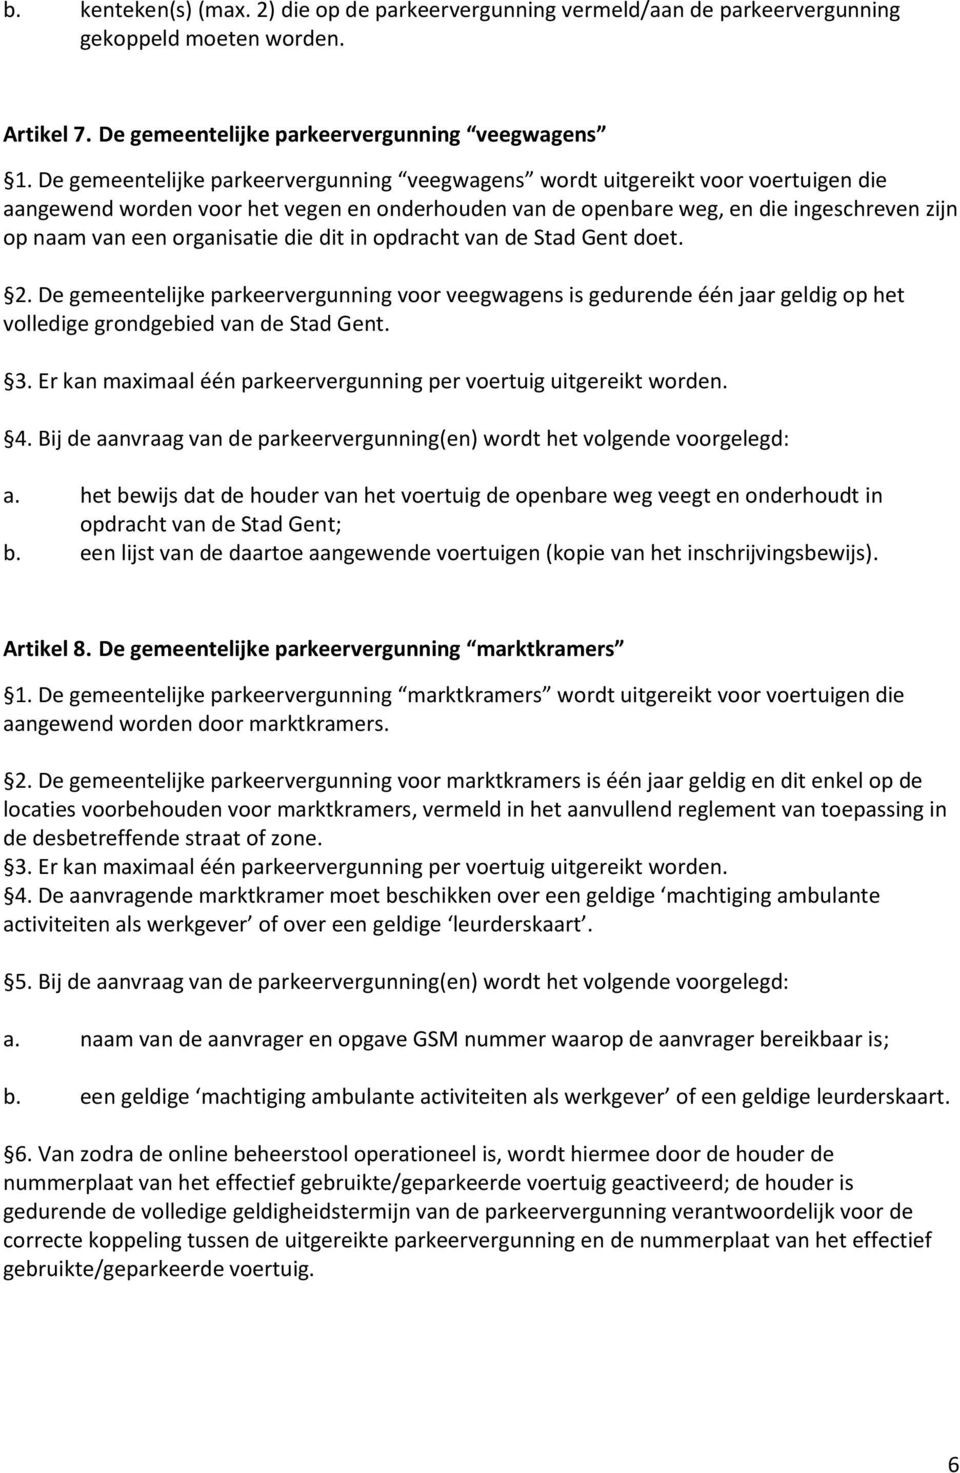 organisatie die dit in opdracht van de Stad Gent doet. 2. De gemeentelijke parkeervergunning voor veegwagens is gedurende één jaar geldig op het volledige grondgebied van de Stad Gent. 3.